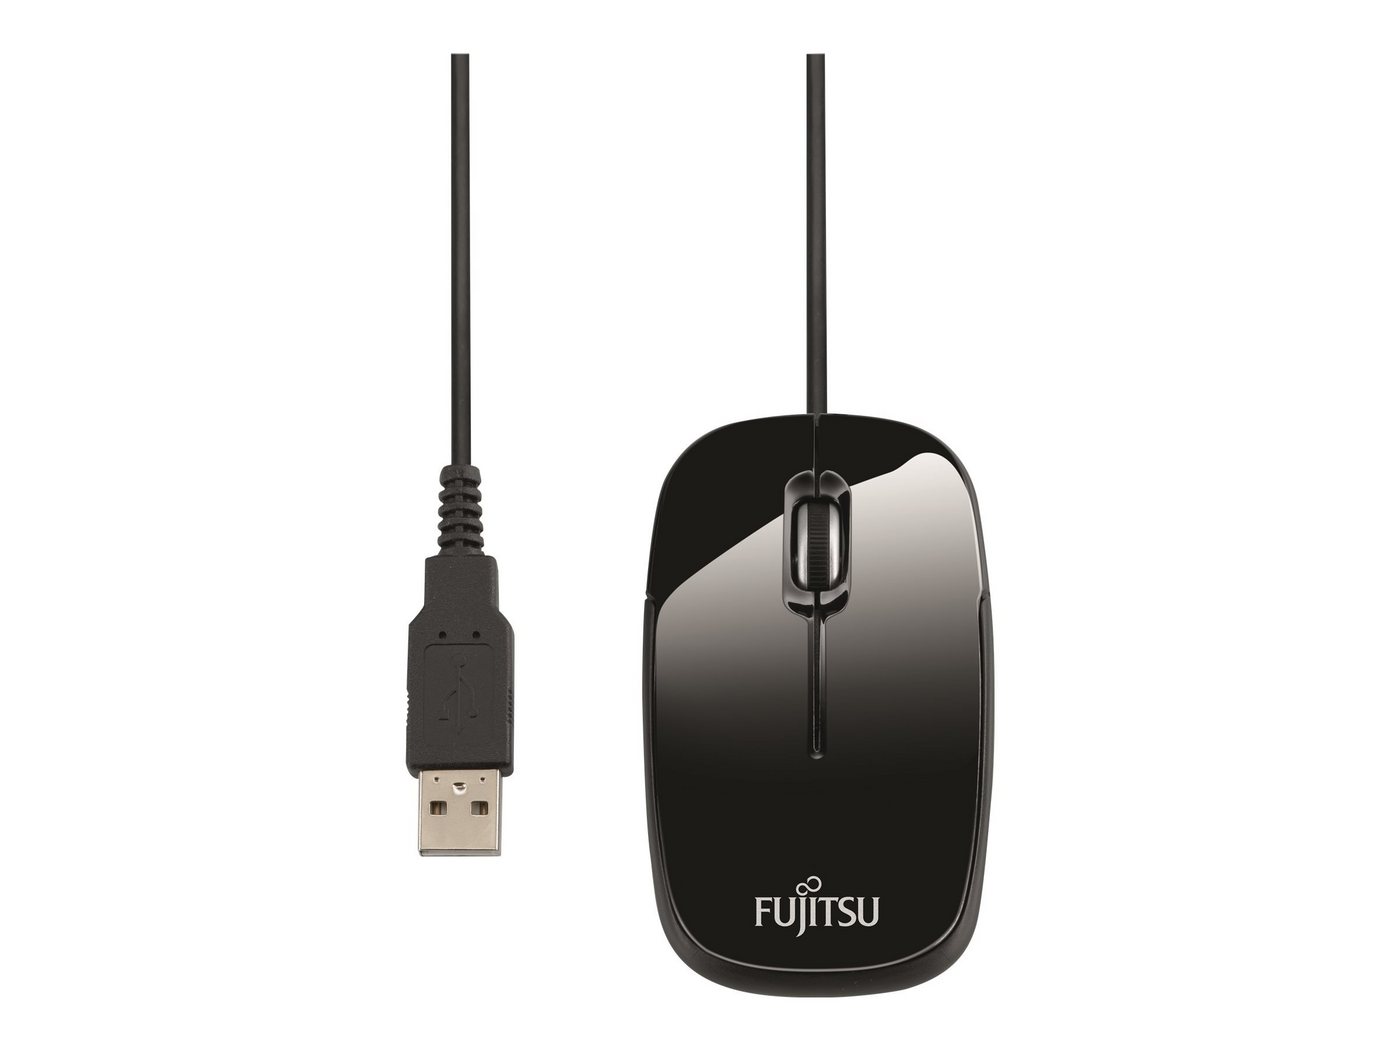 Fujitsu FUJITSU Mouse M420 NB Maus von Fujitsu